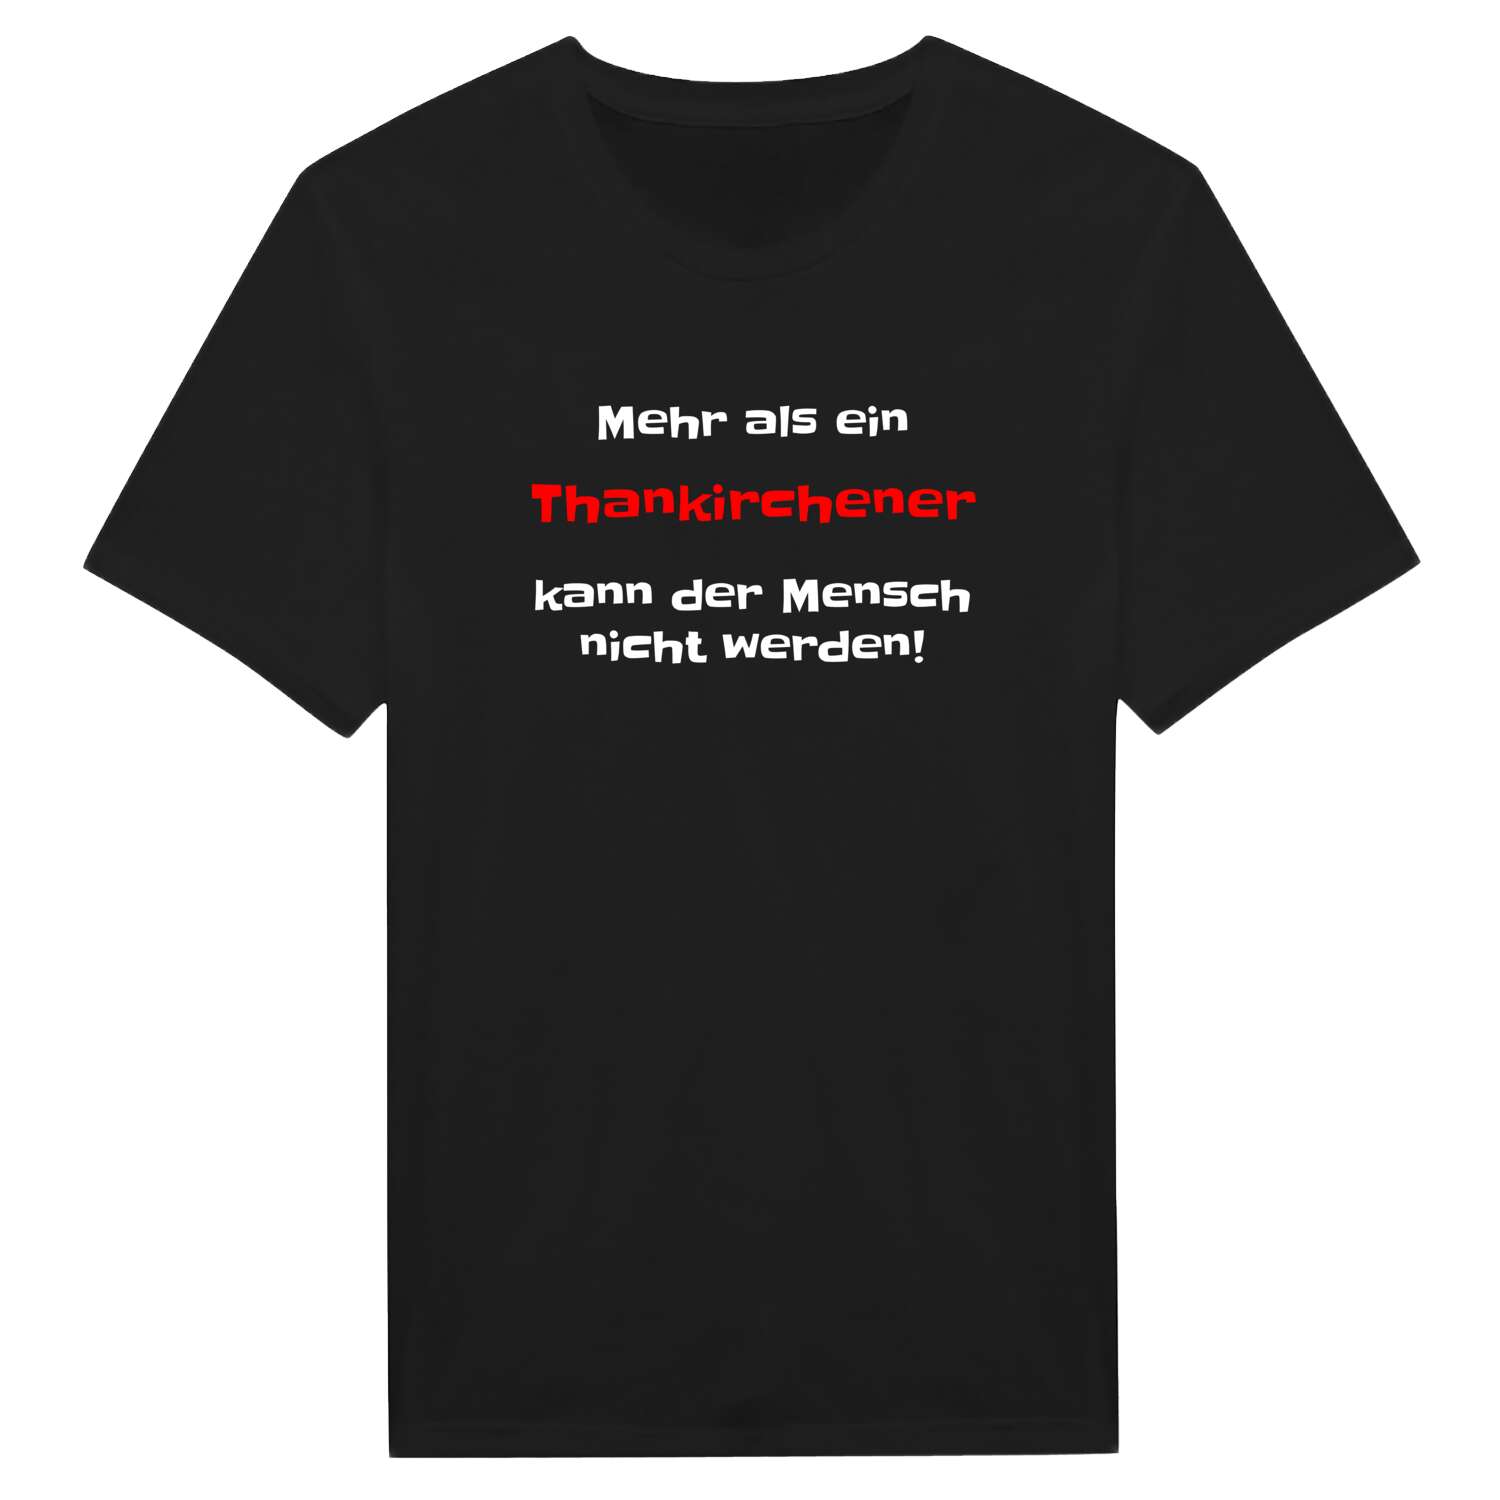 Thankirchen T-Shirt »Mehr als ein«